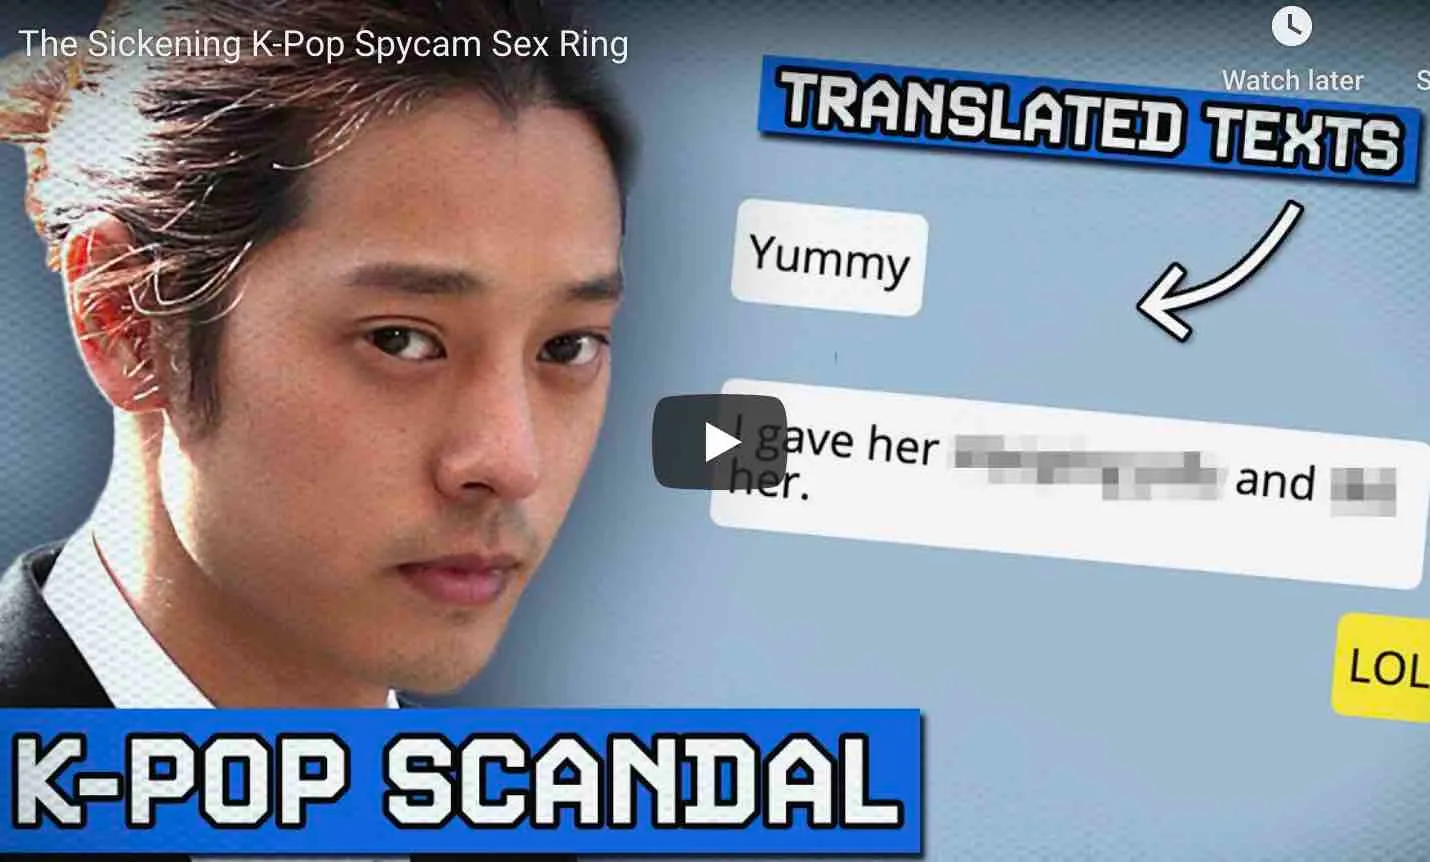 kpop scandal, kpop women assault, burning gate scandal